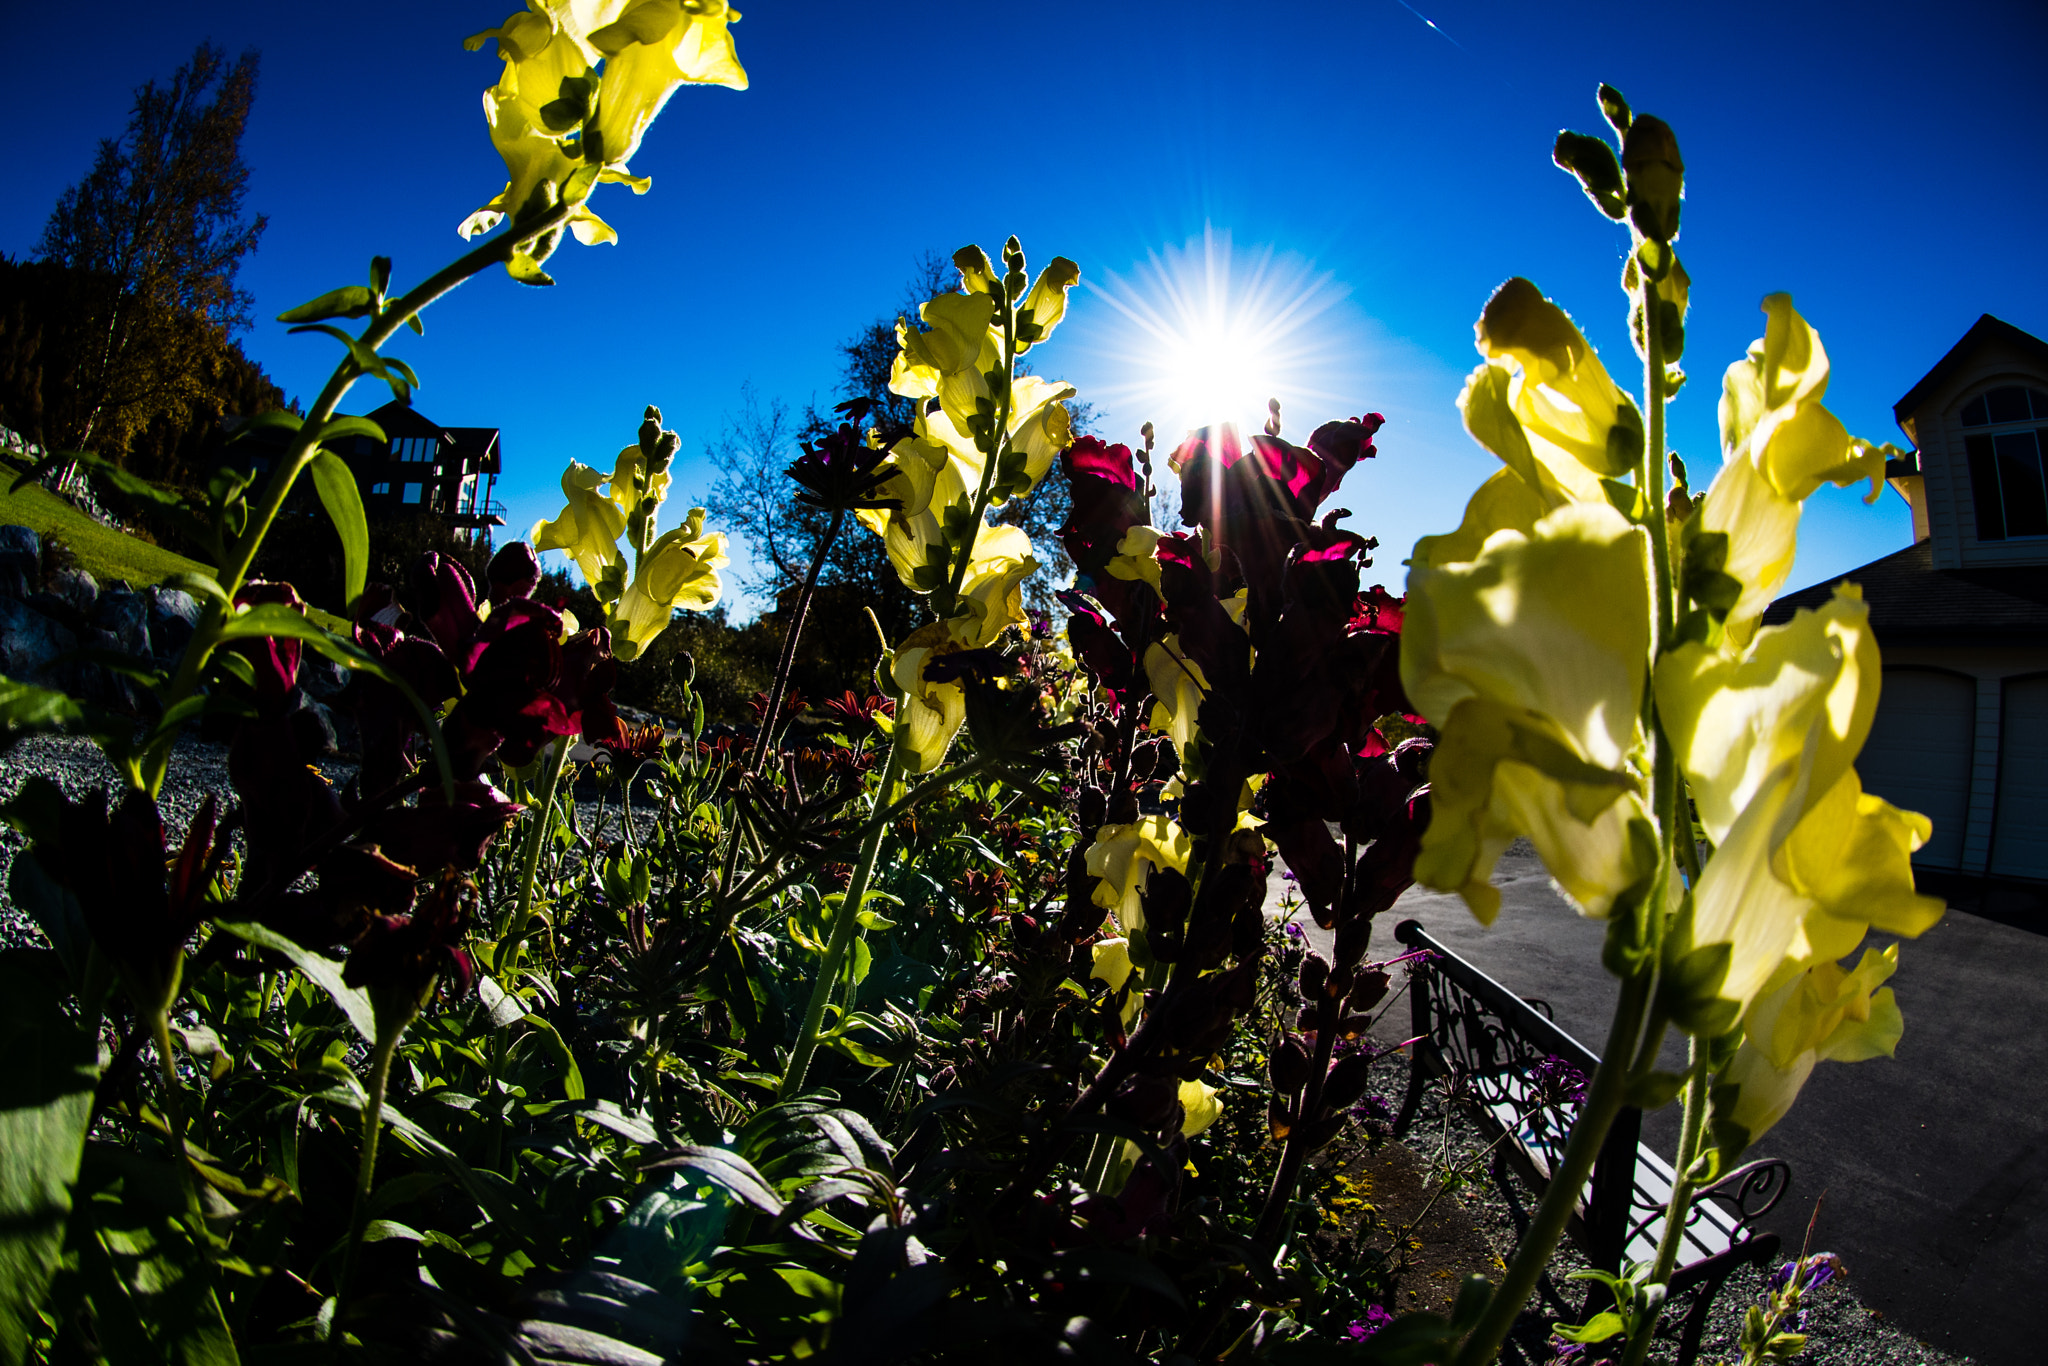 Nikon D810 + Nikon AF DX Fisheye-Nikkor 10.5mm F2.8G ED sample photo. Flowers at sunset photography